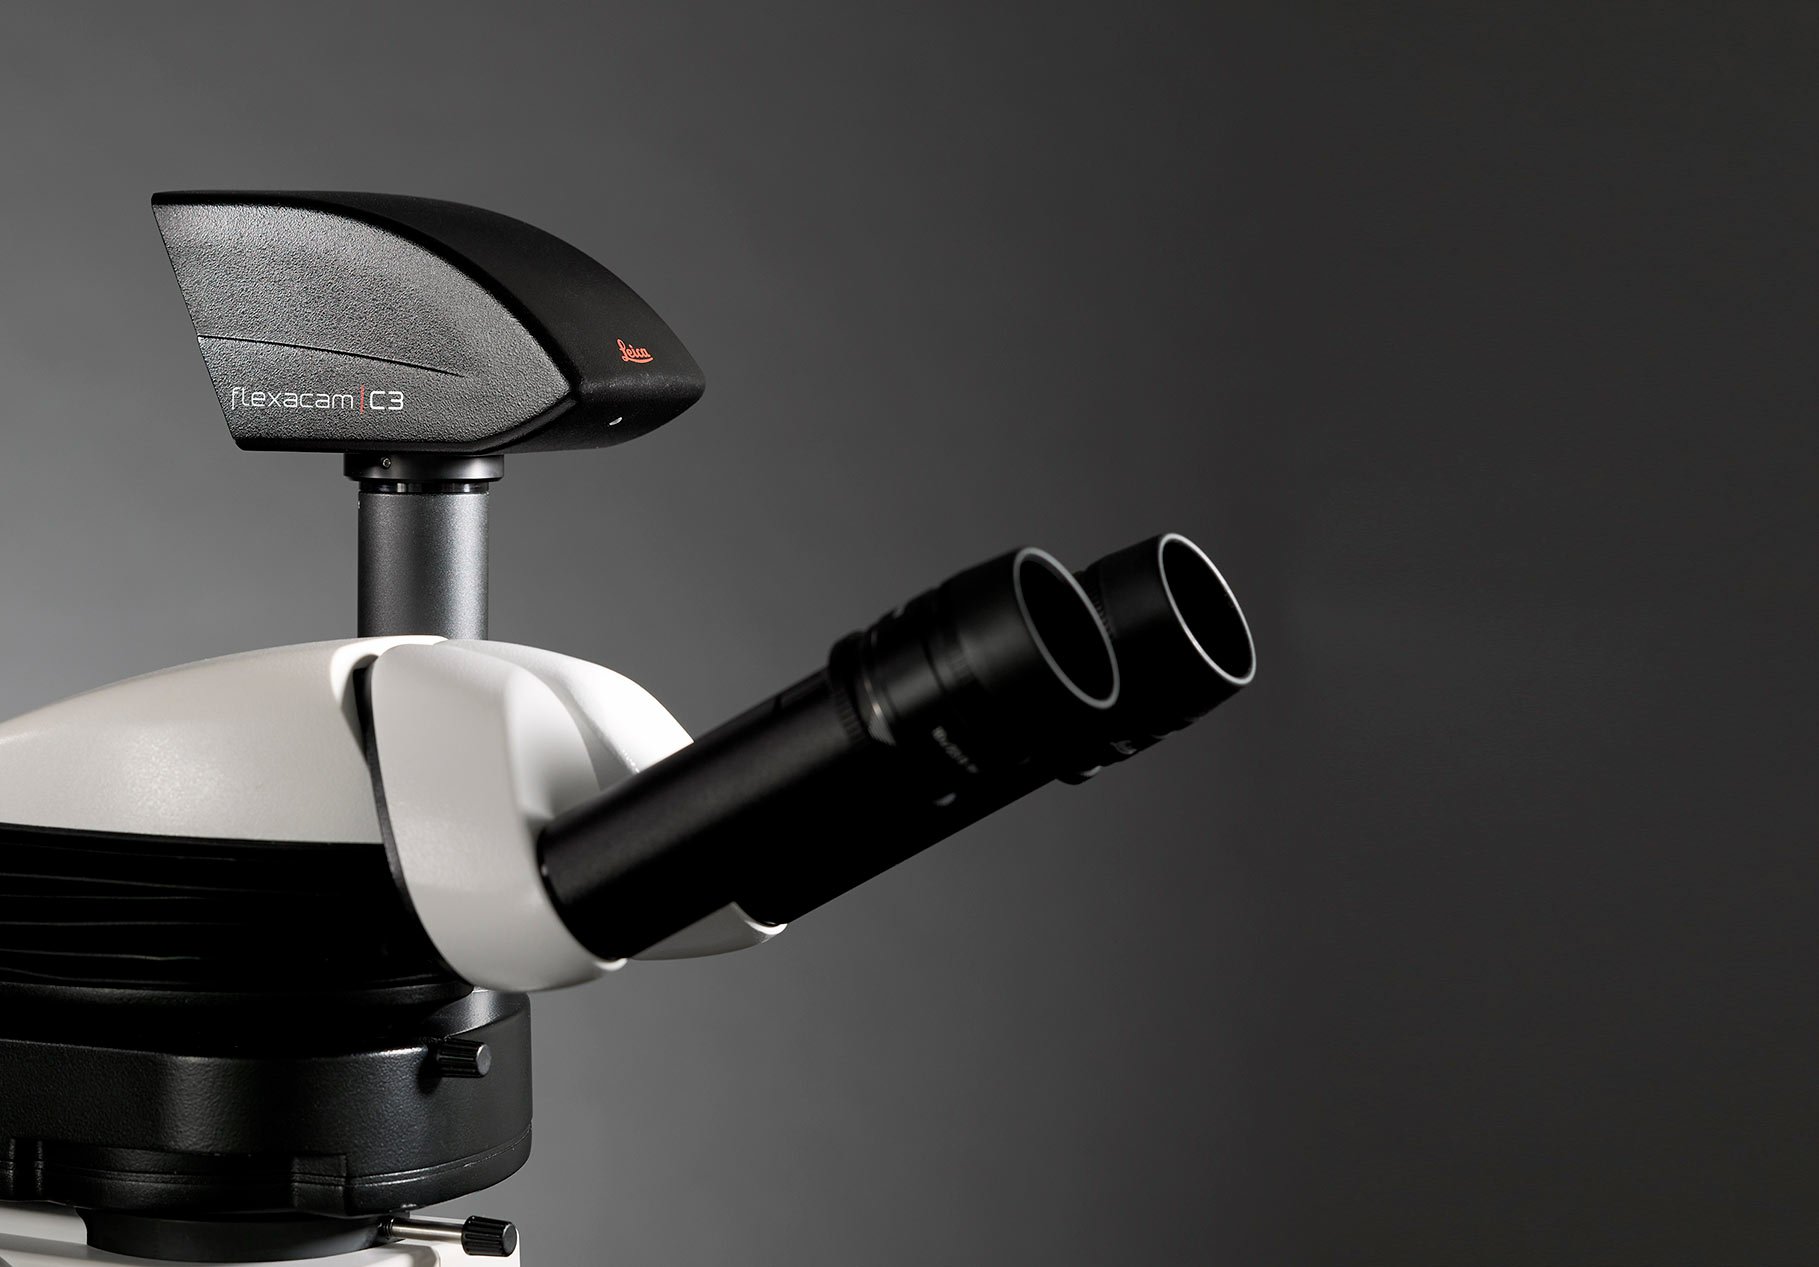 Kamera mikroskopowa Leica Flexacam C3 - dostarczana przez IDM Instruments Australia